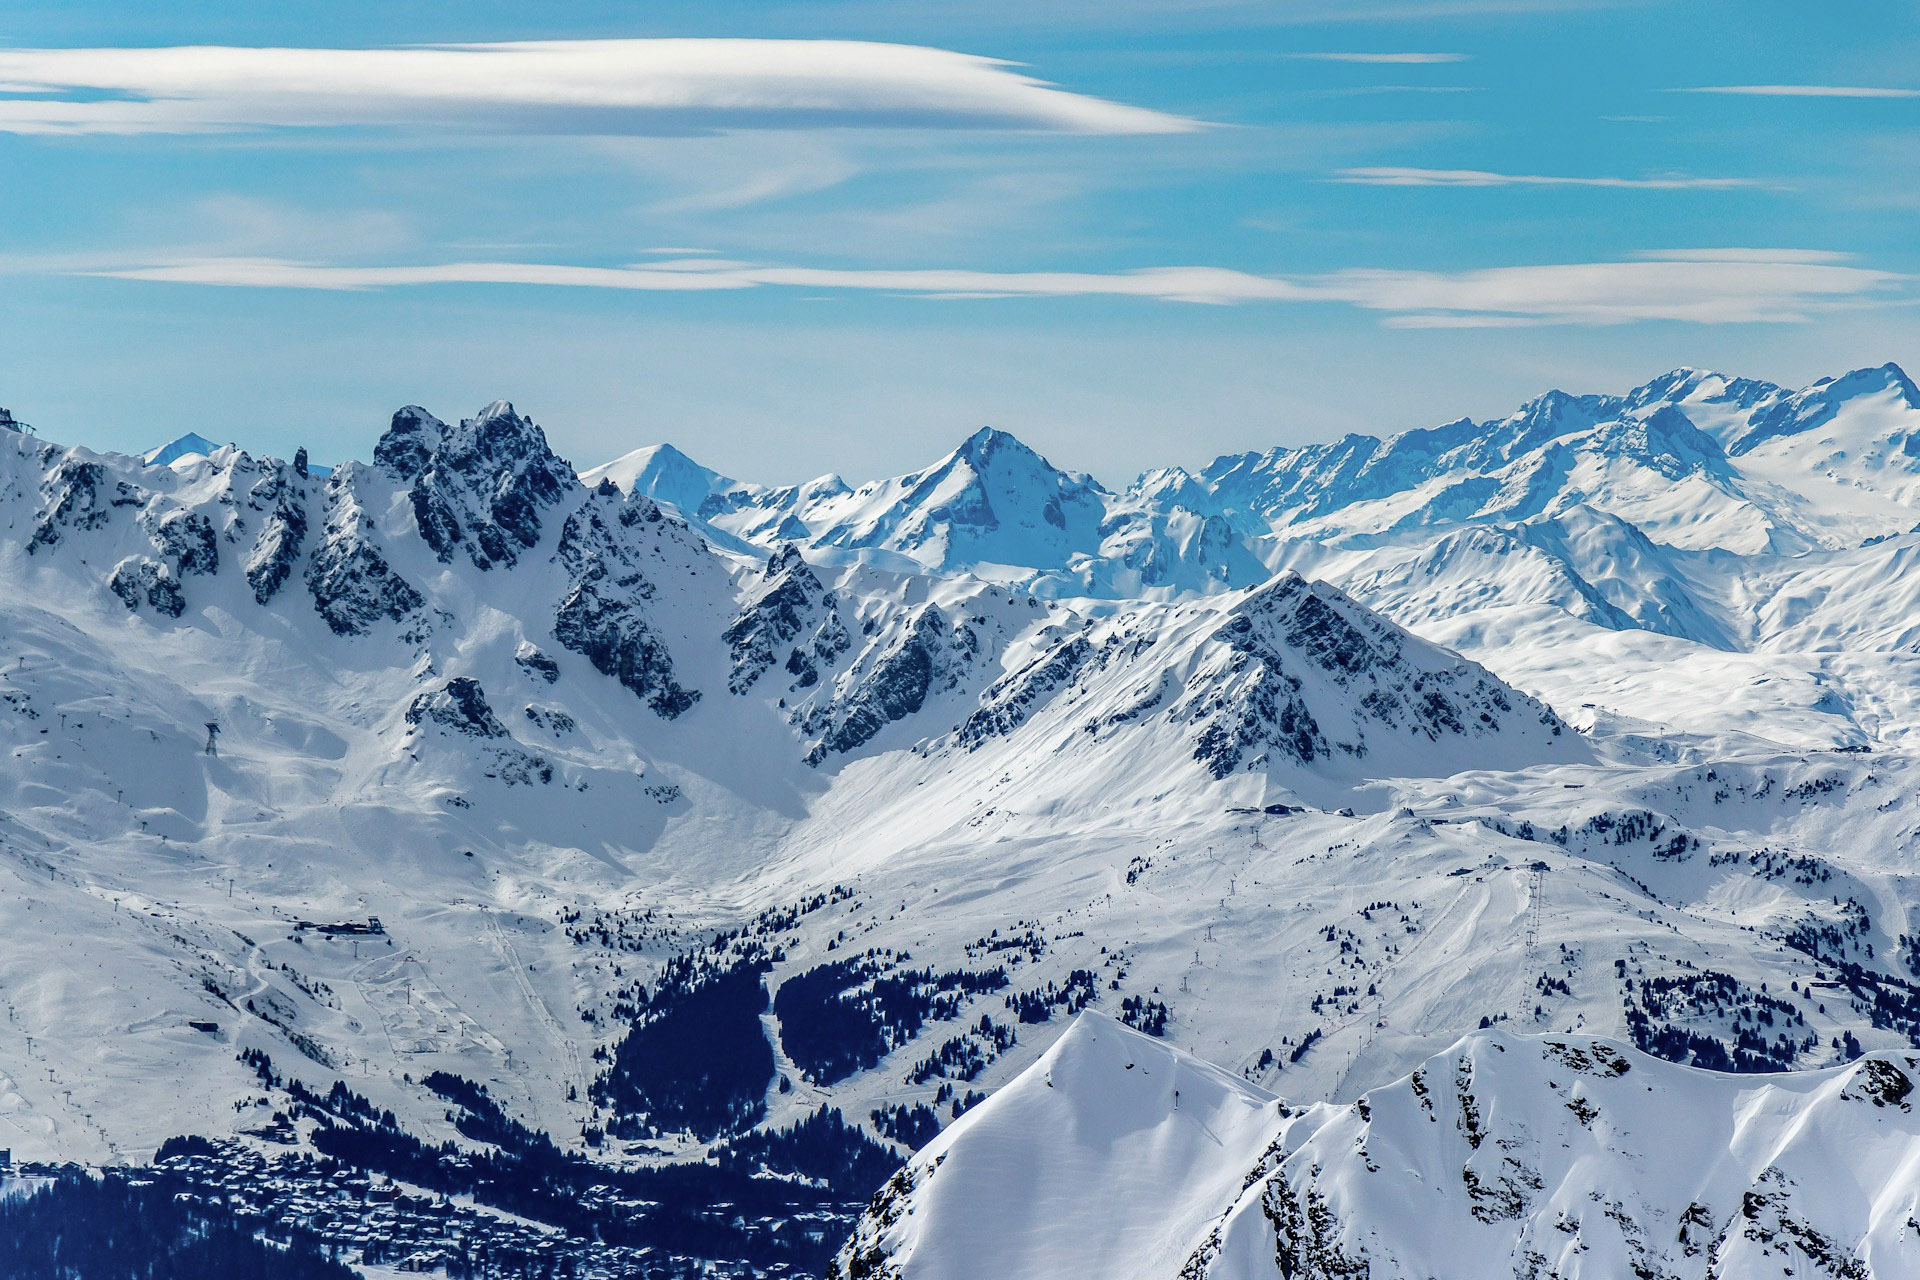 Snowy mountain peaks in La Plagne, Aime-la-Plagne, France